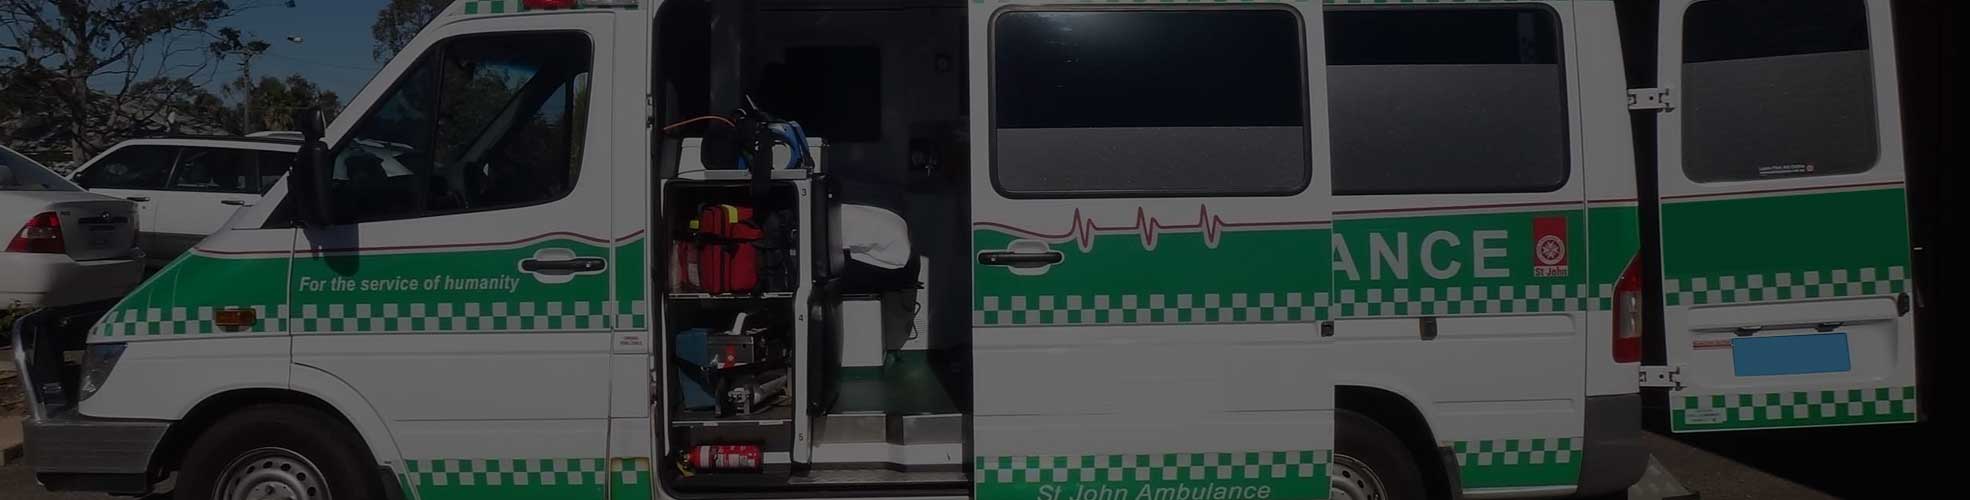 Ambulance number in Delhi